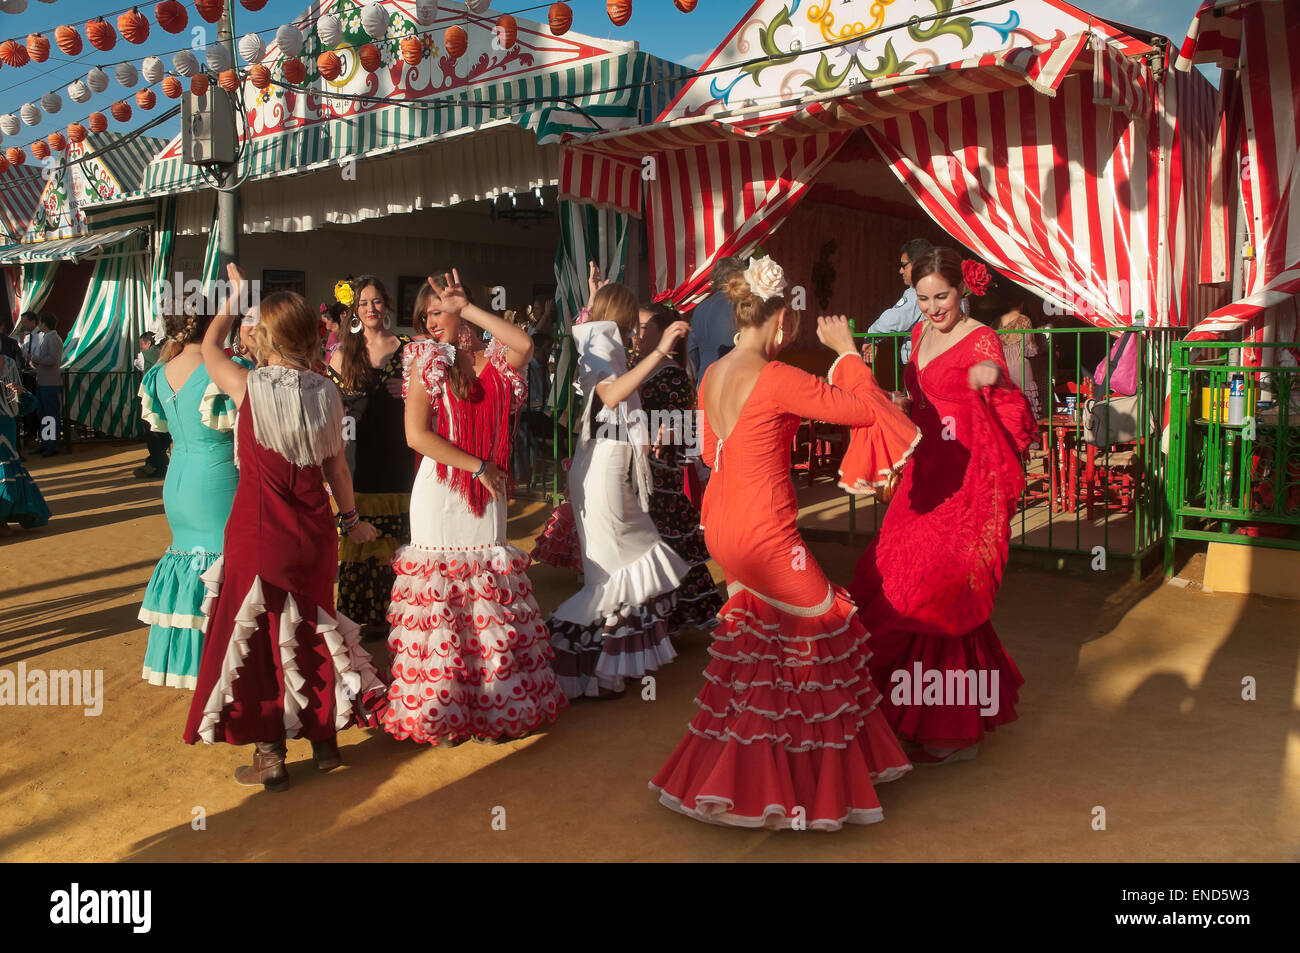 Foire d'avril, les jeunes femmes danse avec la traditionnelle robe flamenco, Séville, Andalousie, Espagne, Europe Banque D'Images